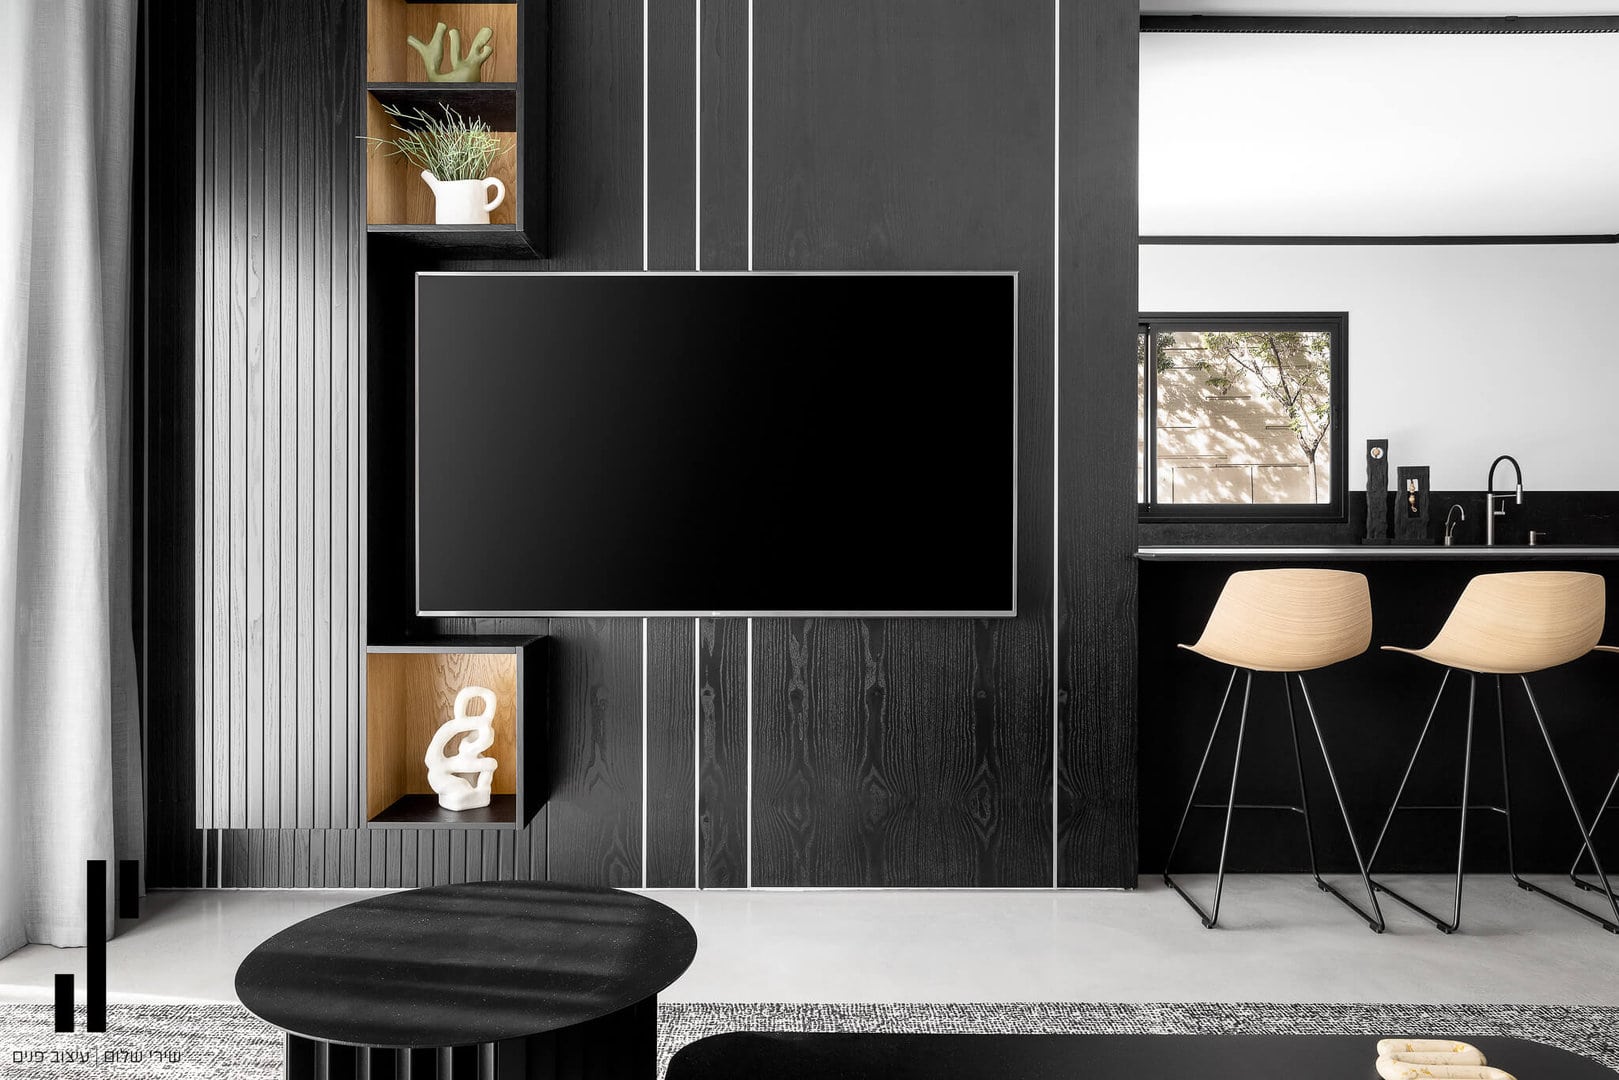 עיצוב קיר טלוויזיה לסלון